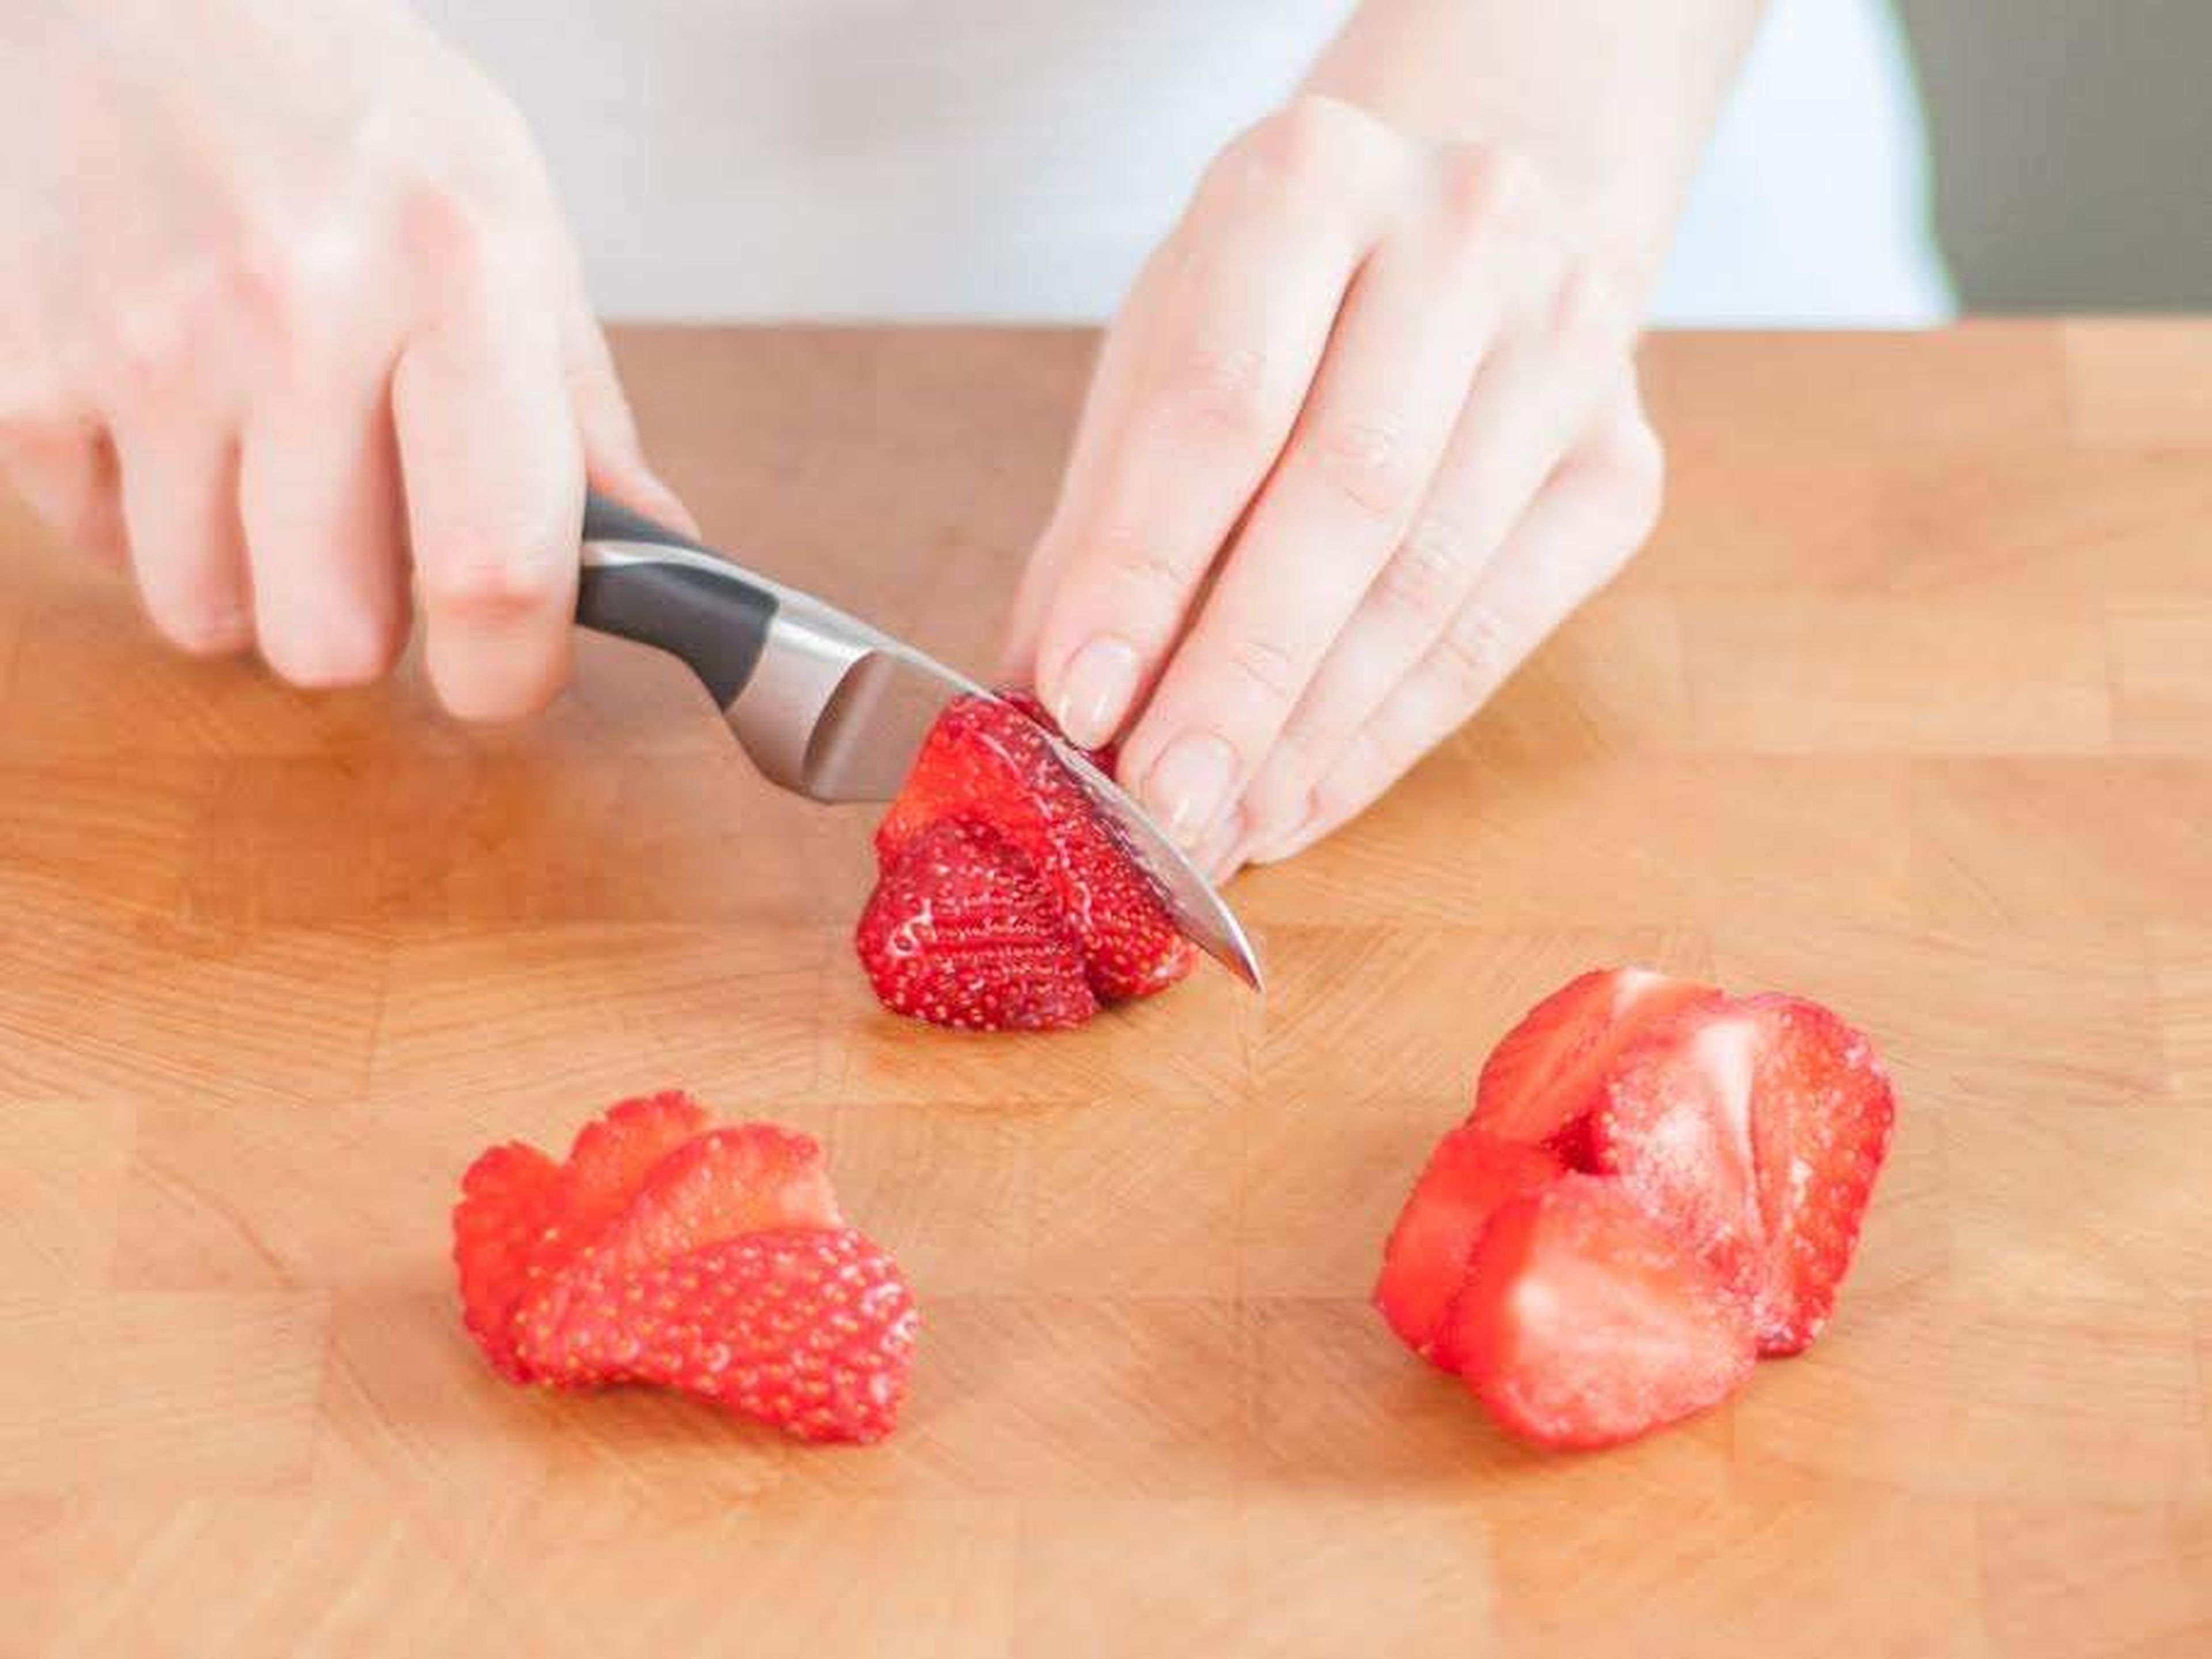 Backofen auf 190°C vorheizen. Backblech mit Backpapier auslegen. Strunk der Erdbeeren entfernen. Einen Teil der Erdbeeren halbieren und in eine große Schüssel geben. Restliche Erdbeeren zum Servieren in Scheiben schneiden und beiseitestellen.